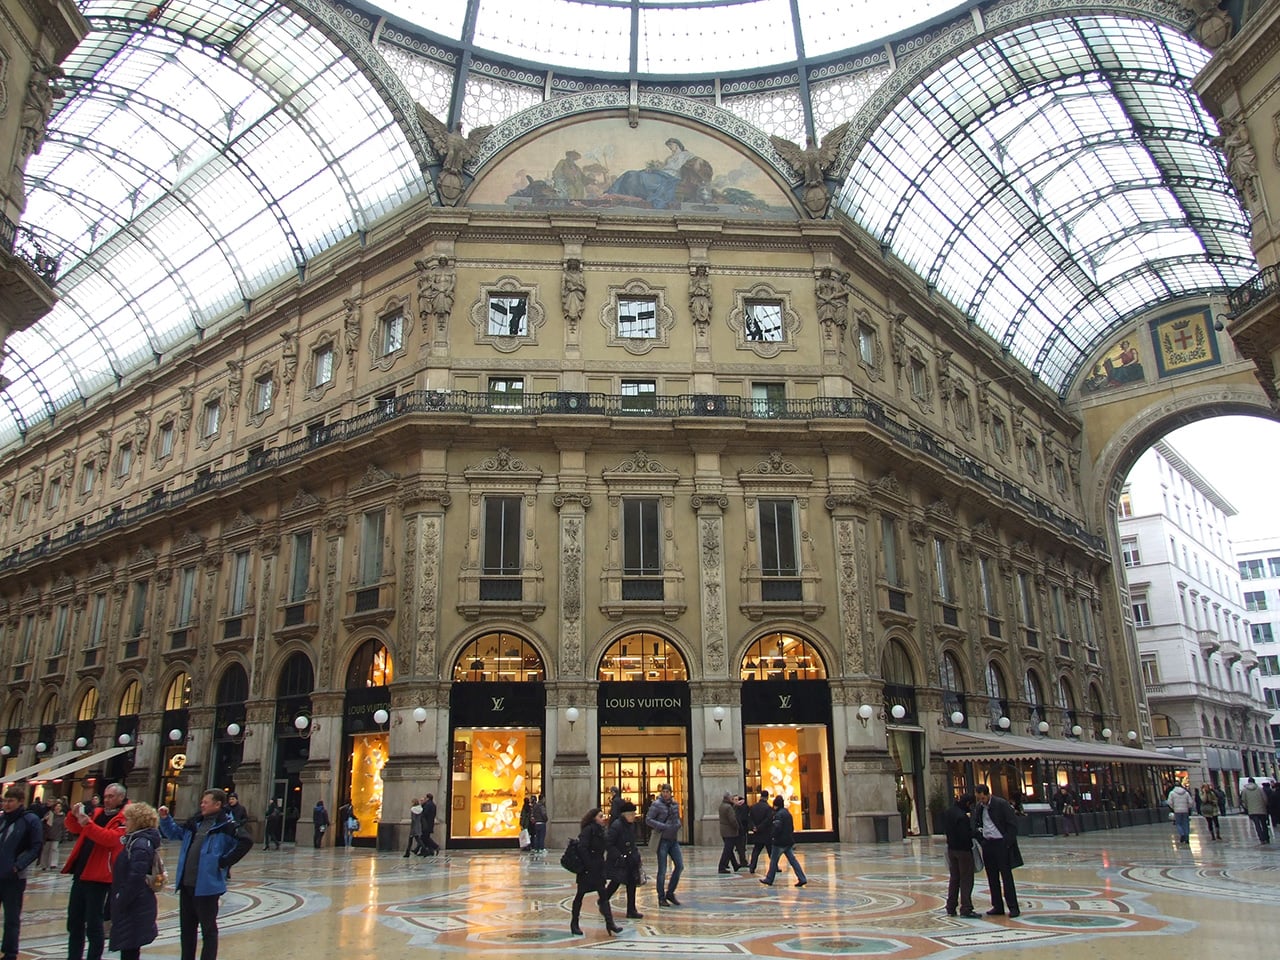 The Galleria Vittorio Emanuele II in Milan - Gaiagroup